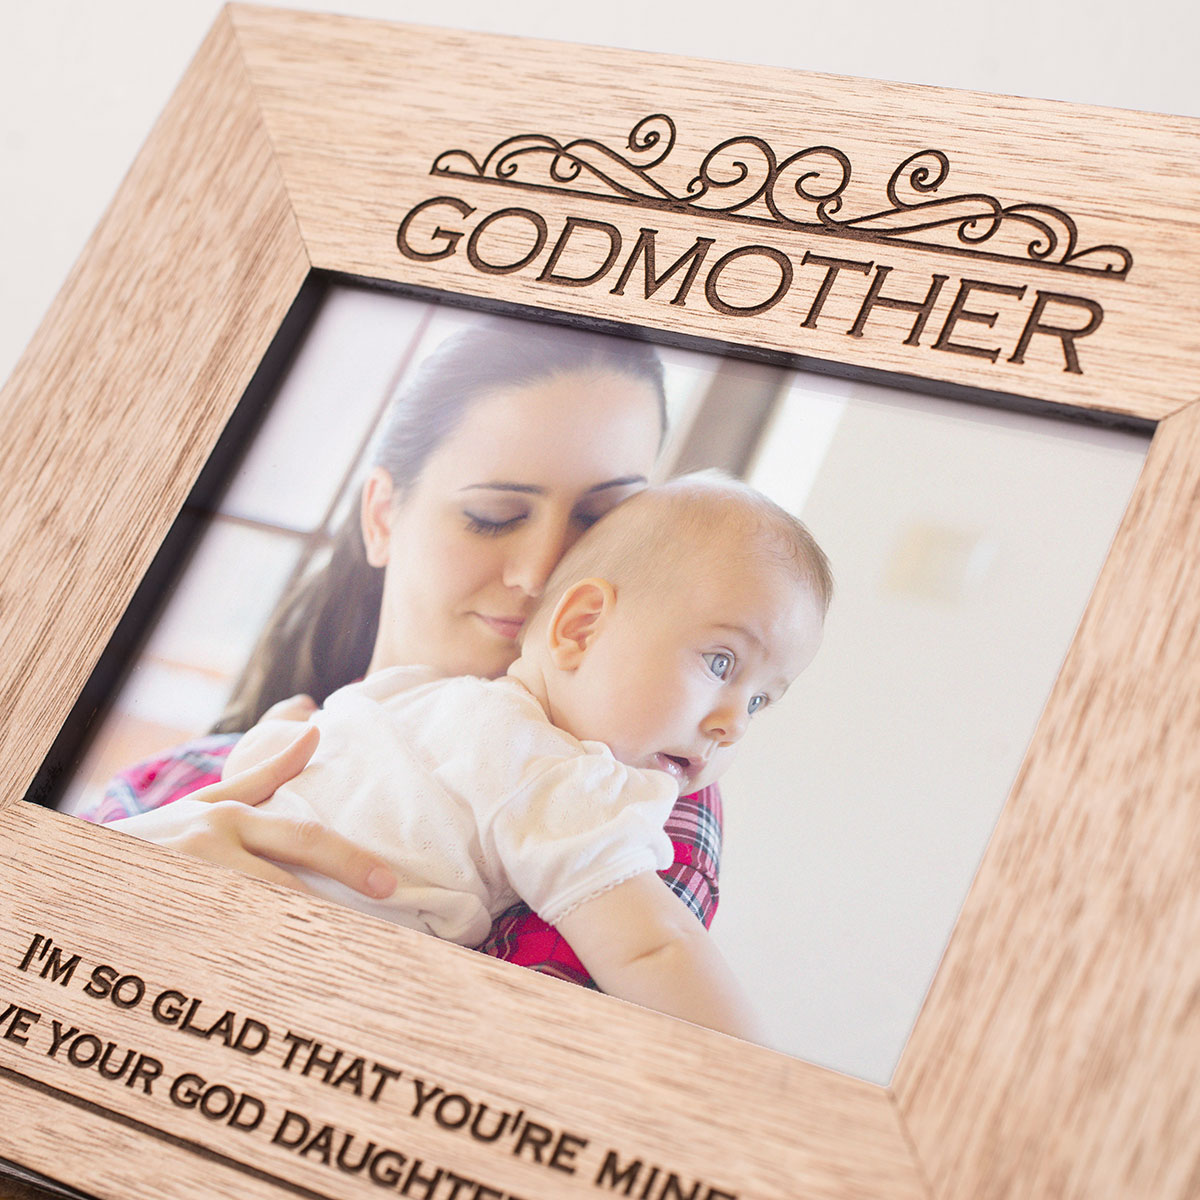 Engraved Wooden Photo Frame - Godmother